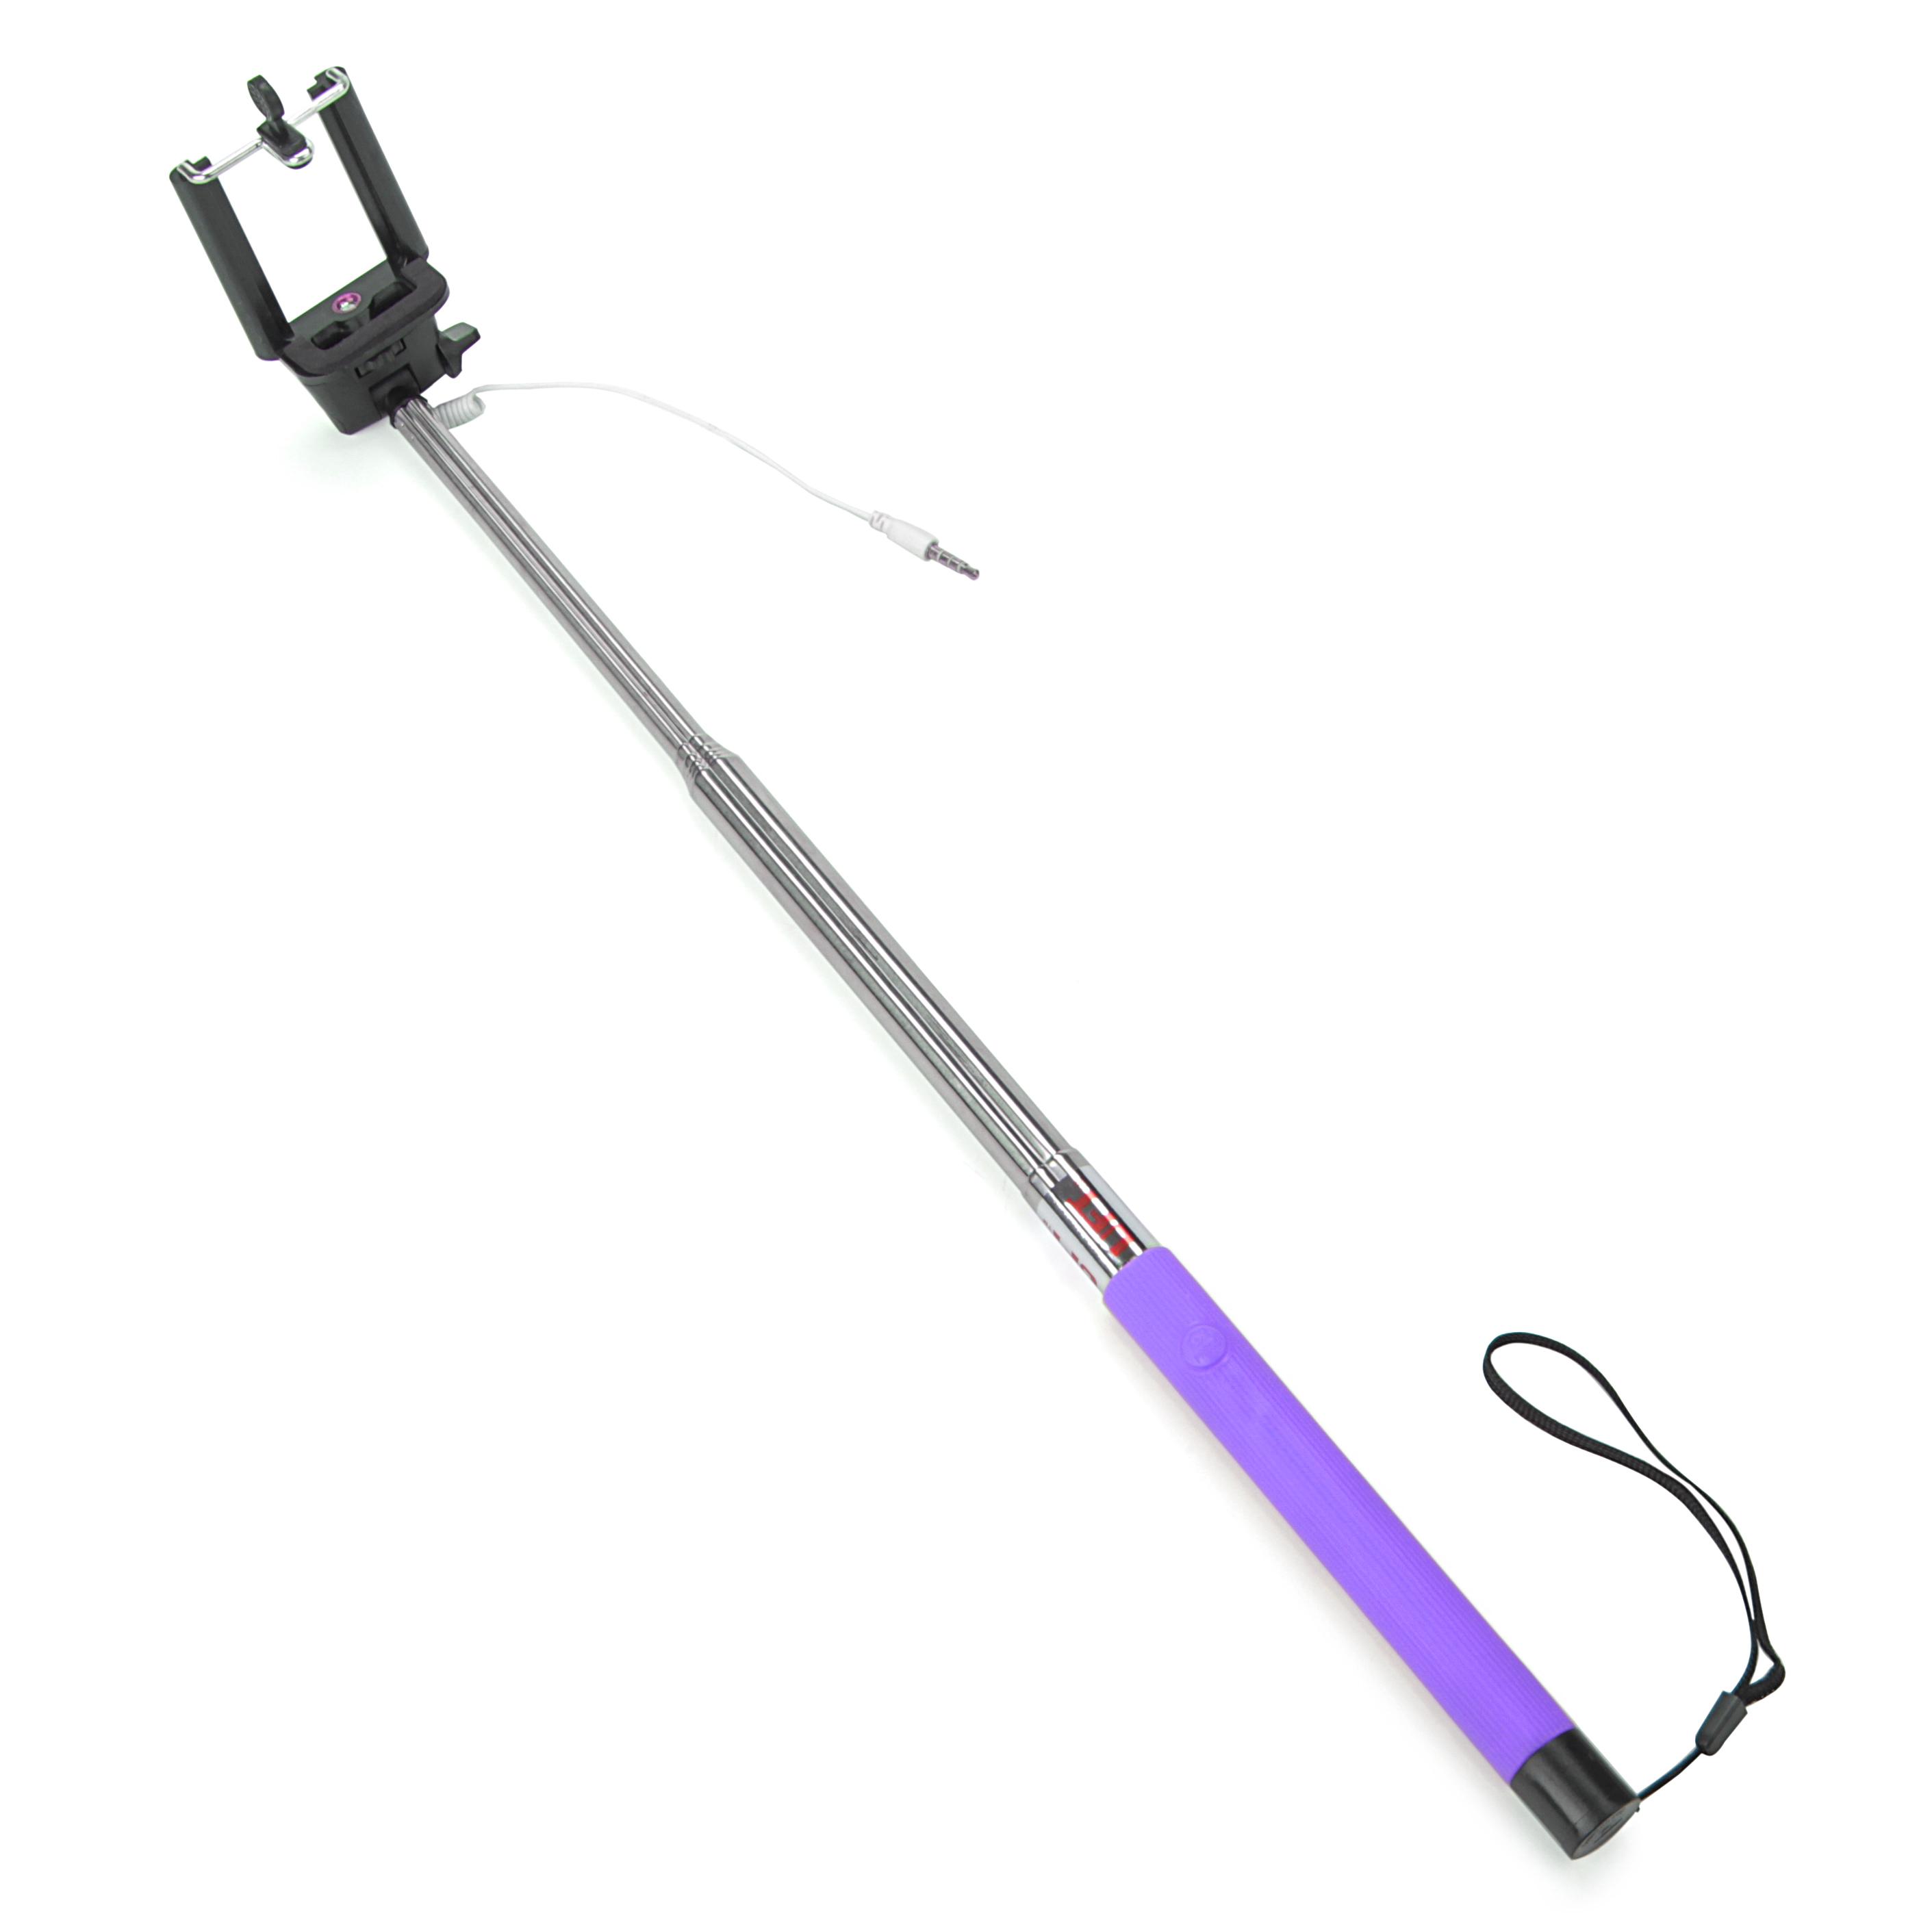 Монопод для селфи селфи палка со шнуром 3.5 мм mini-jack 118 см UFT SS1 Purple